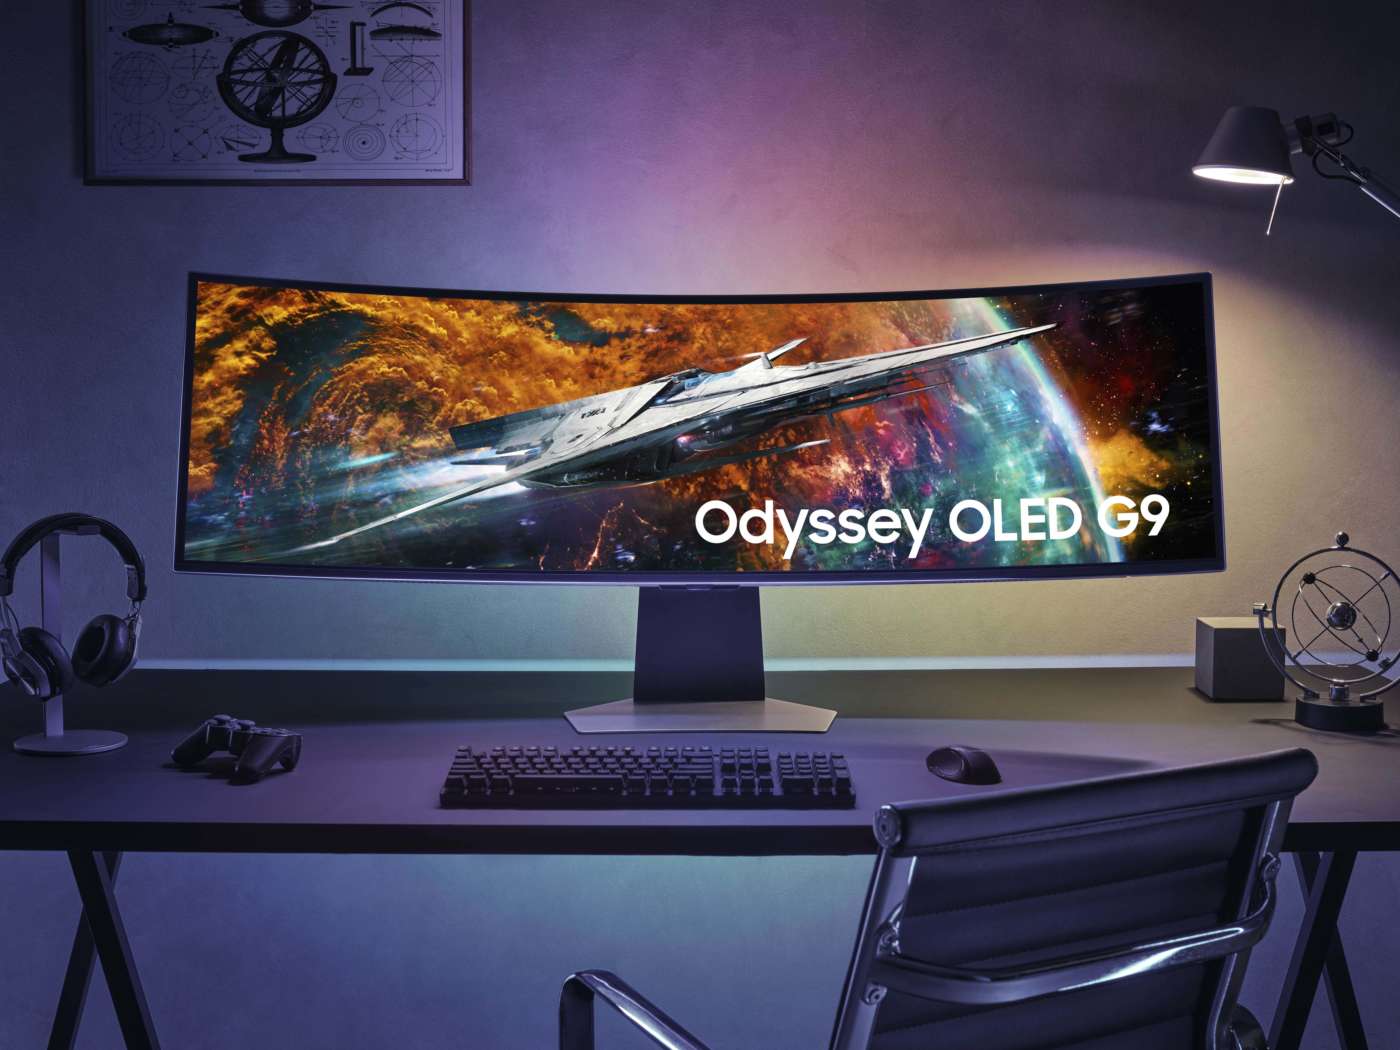 Samsung Odyssey OLED G9 alza il livello del gaming